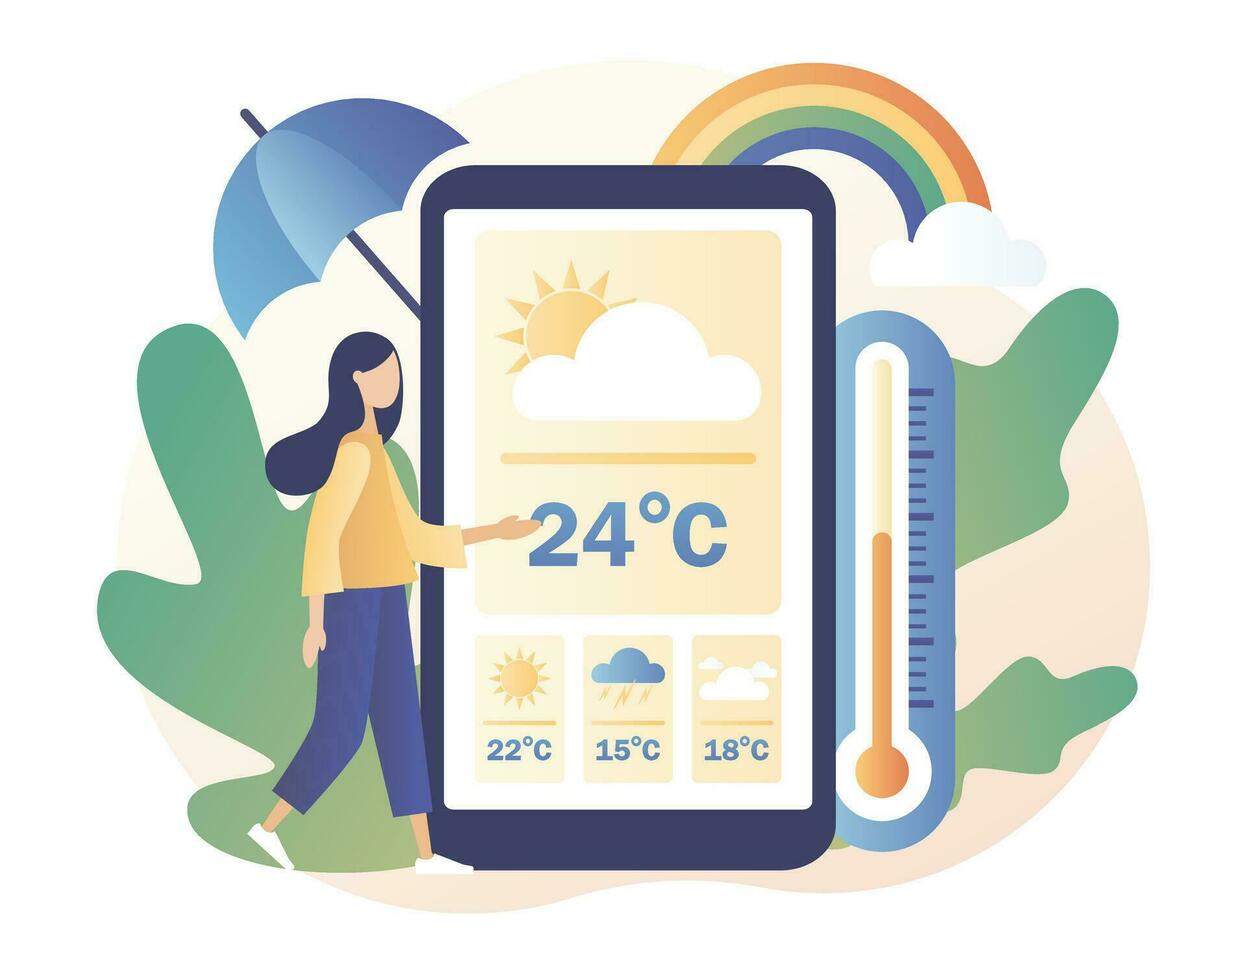 mycket liten flicka tittar på de väder prognos i smartphone app. väder prognos uppkopplad. Sol, moln, vind, åskväder, regn. meteorologi vetenskap. modern platt tecknad serie stil. vektor illustration